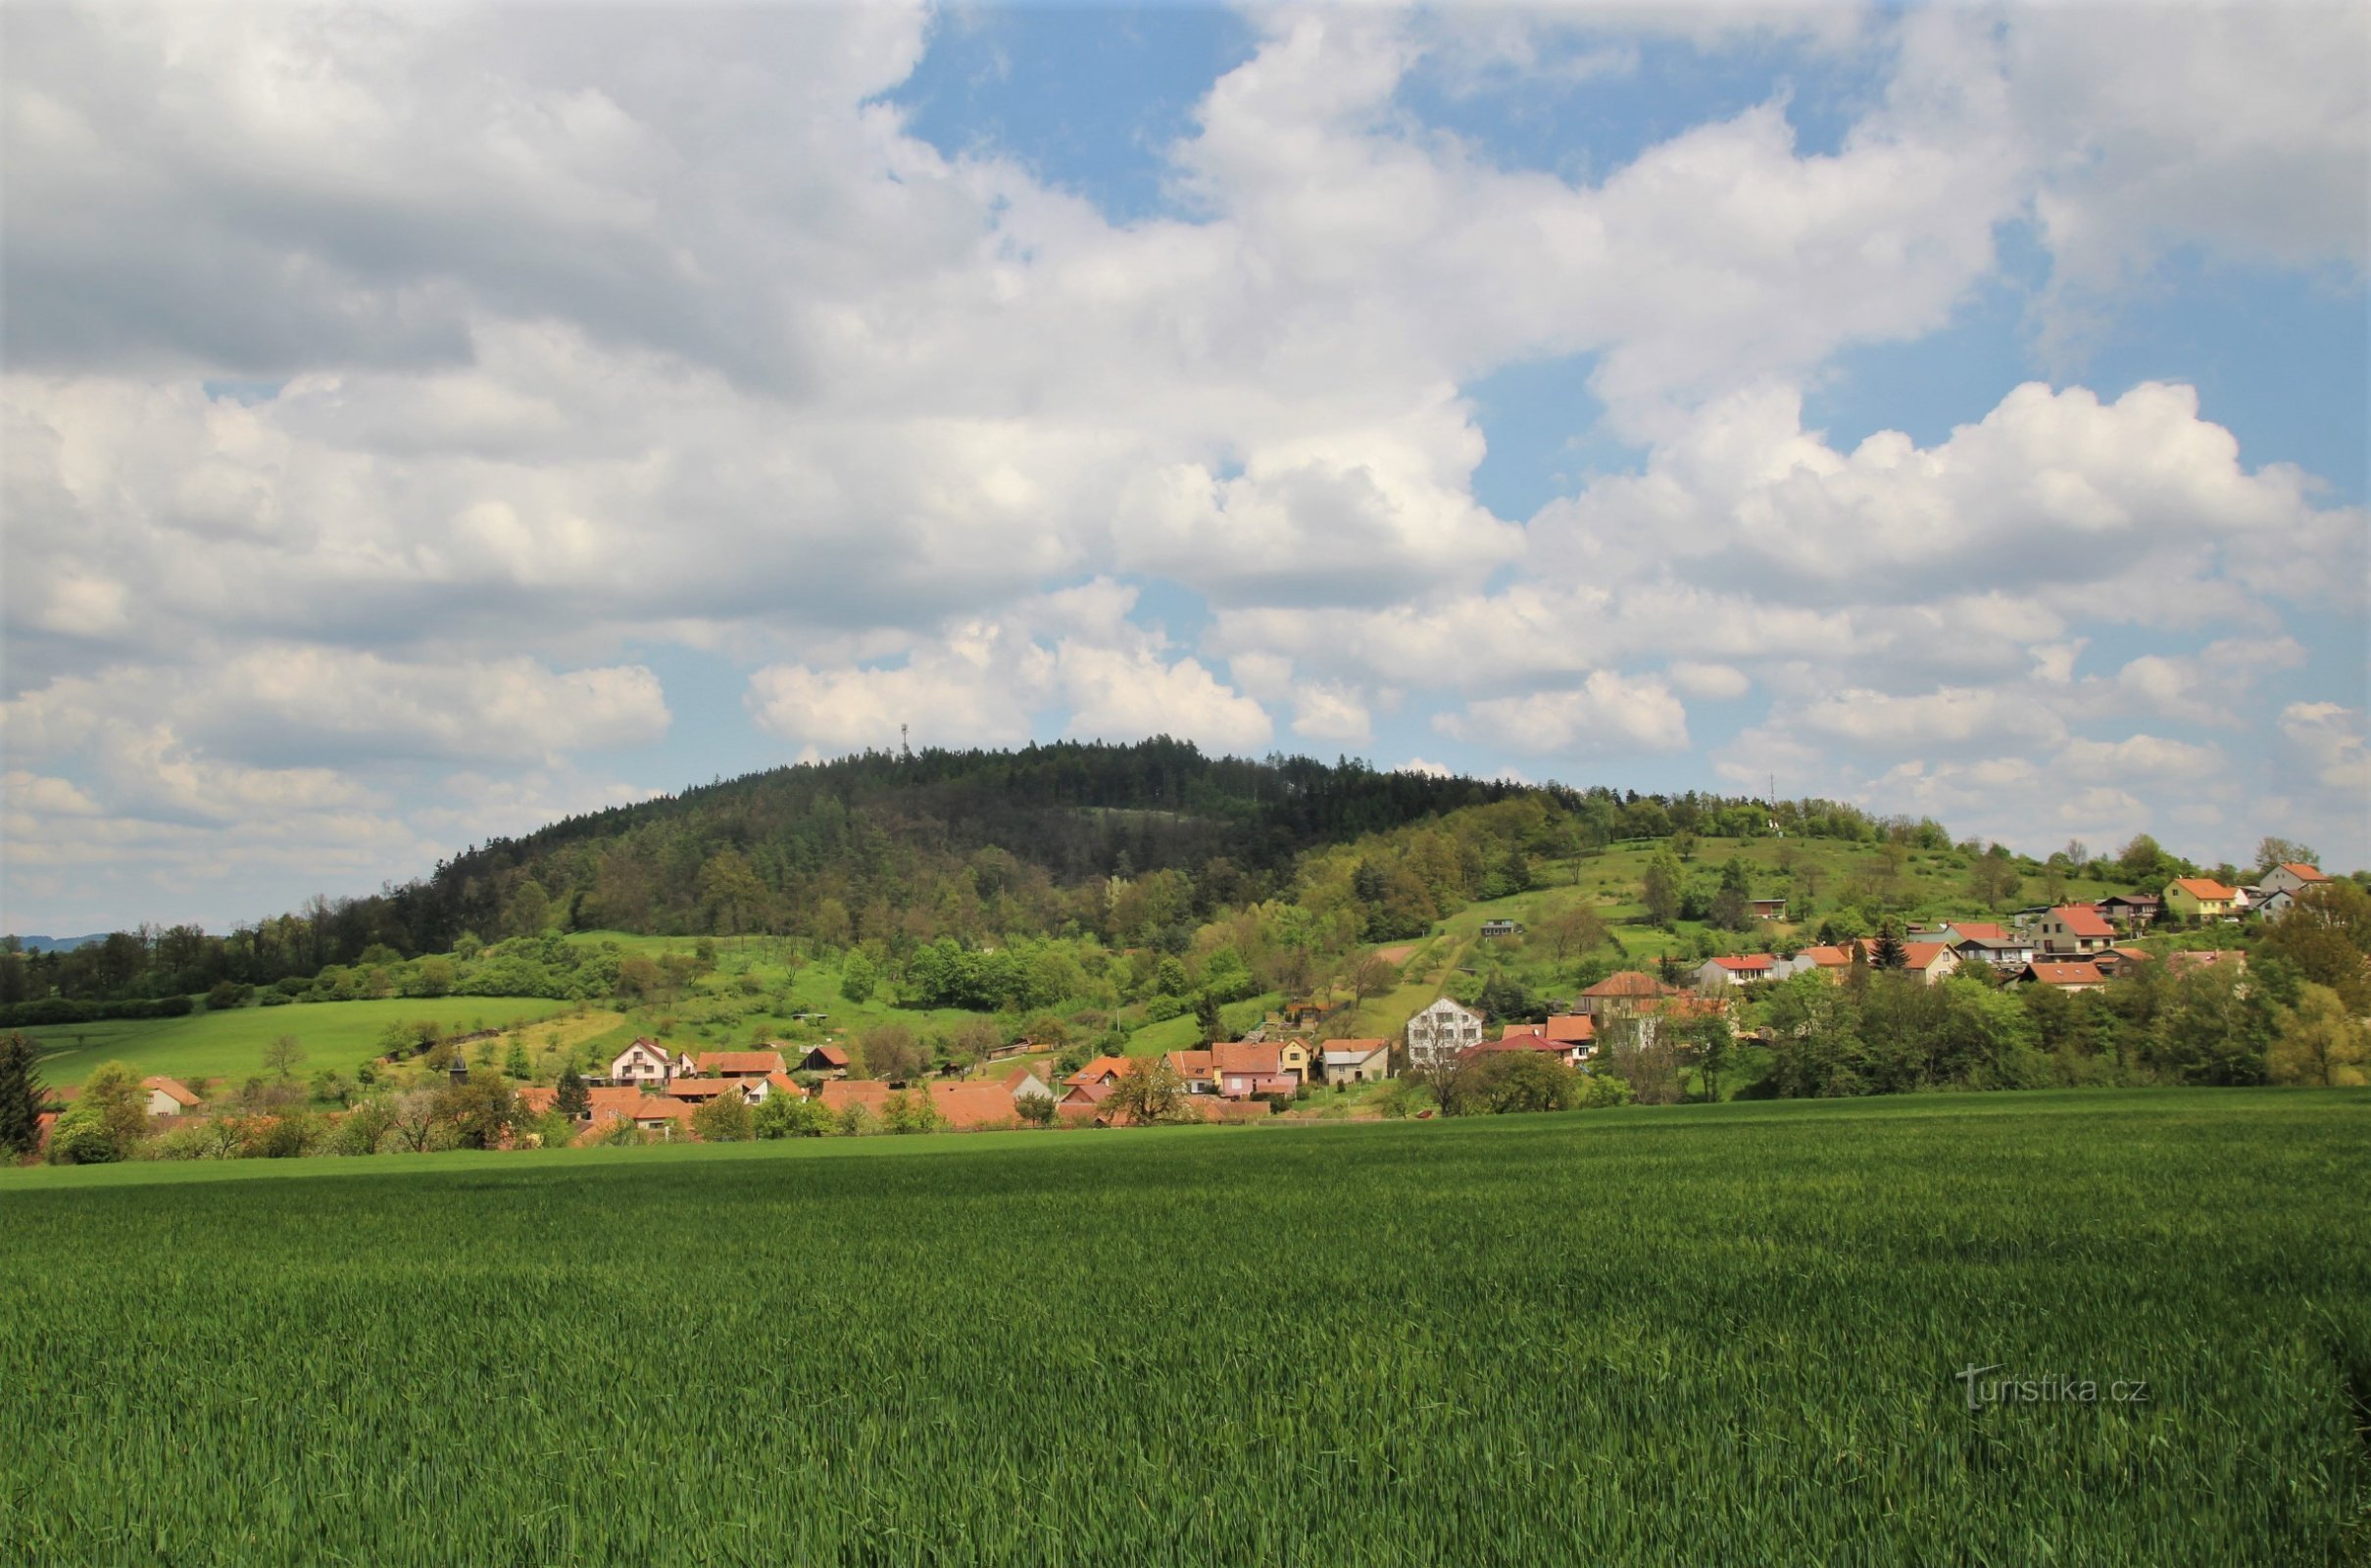 Uitzicht op de bergkam van Fáberka, op de voorgrond het dorp Jabloňany, rechts is er een uitkijkpunt op de bergkam